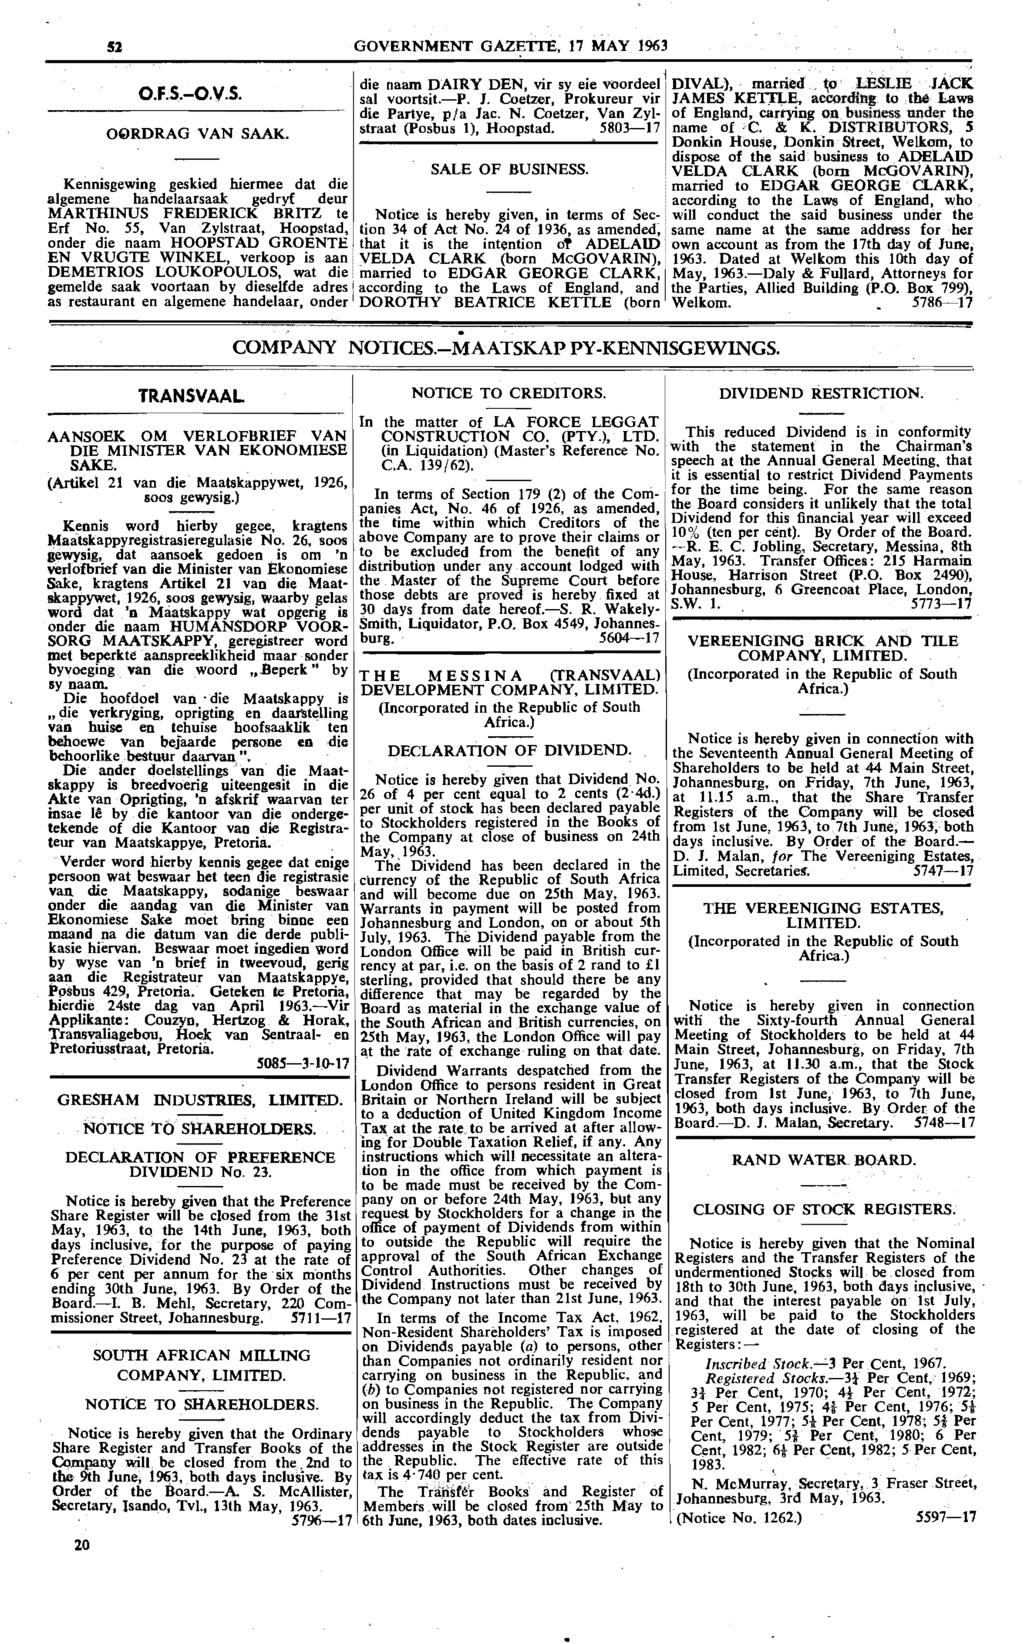 51 GOVERNMENT GAZETTE, 17 MAY 1963 O.F.S.-O.V.s. OQRDRAG VAN SAAK.